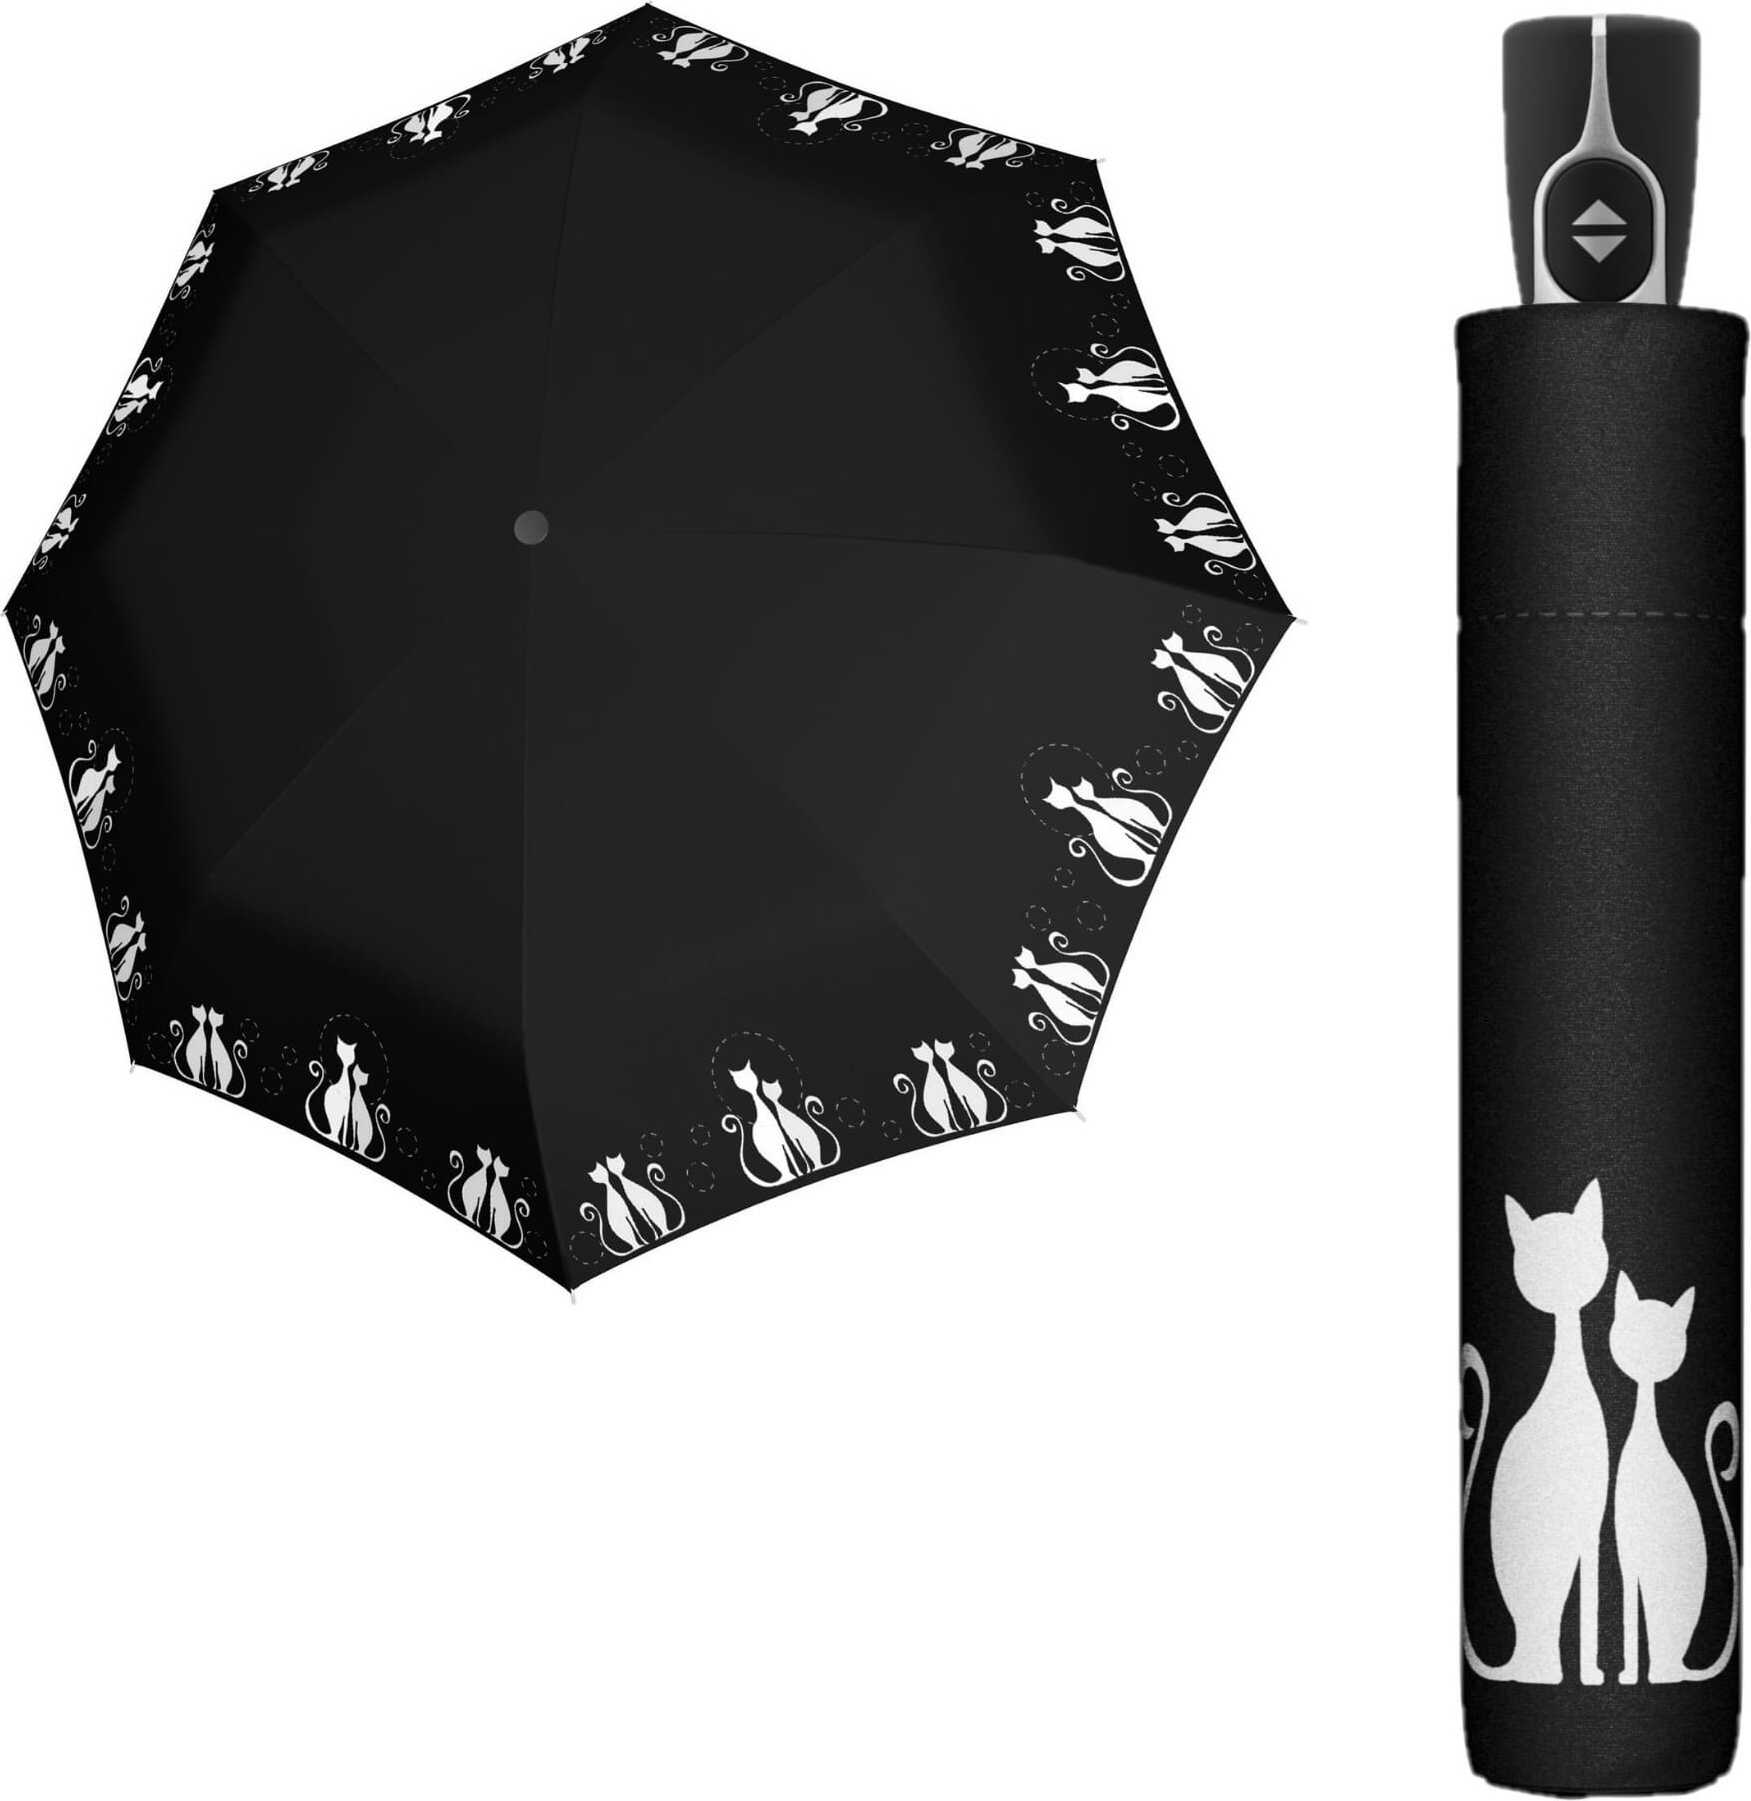 Fiber Magic Umbrella cats black